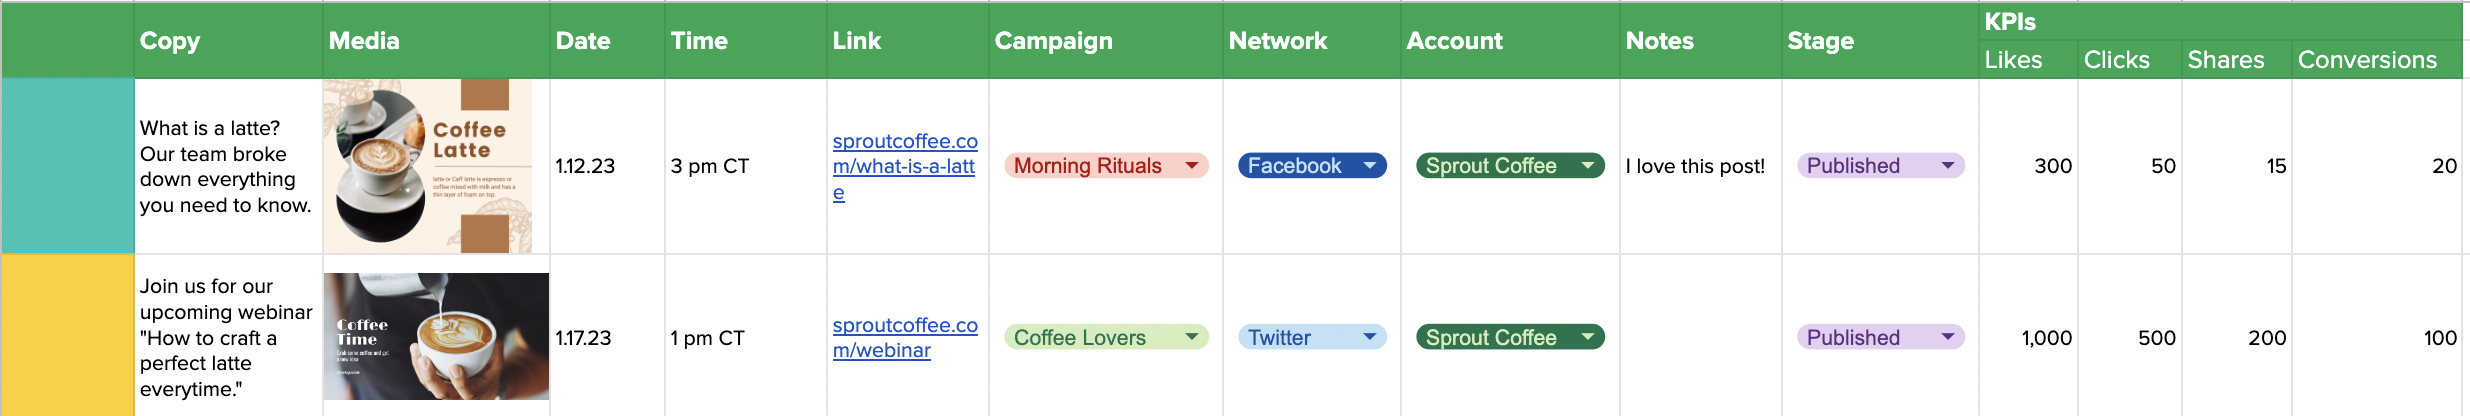 تصویری از یک الگوی تقویم رسانه‌های اجتماعی که نشان می‌دهد الگو در هنگام پر کردن چگونه به نظر می‌رسد، از جمله افزودن کپی و رسانه.